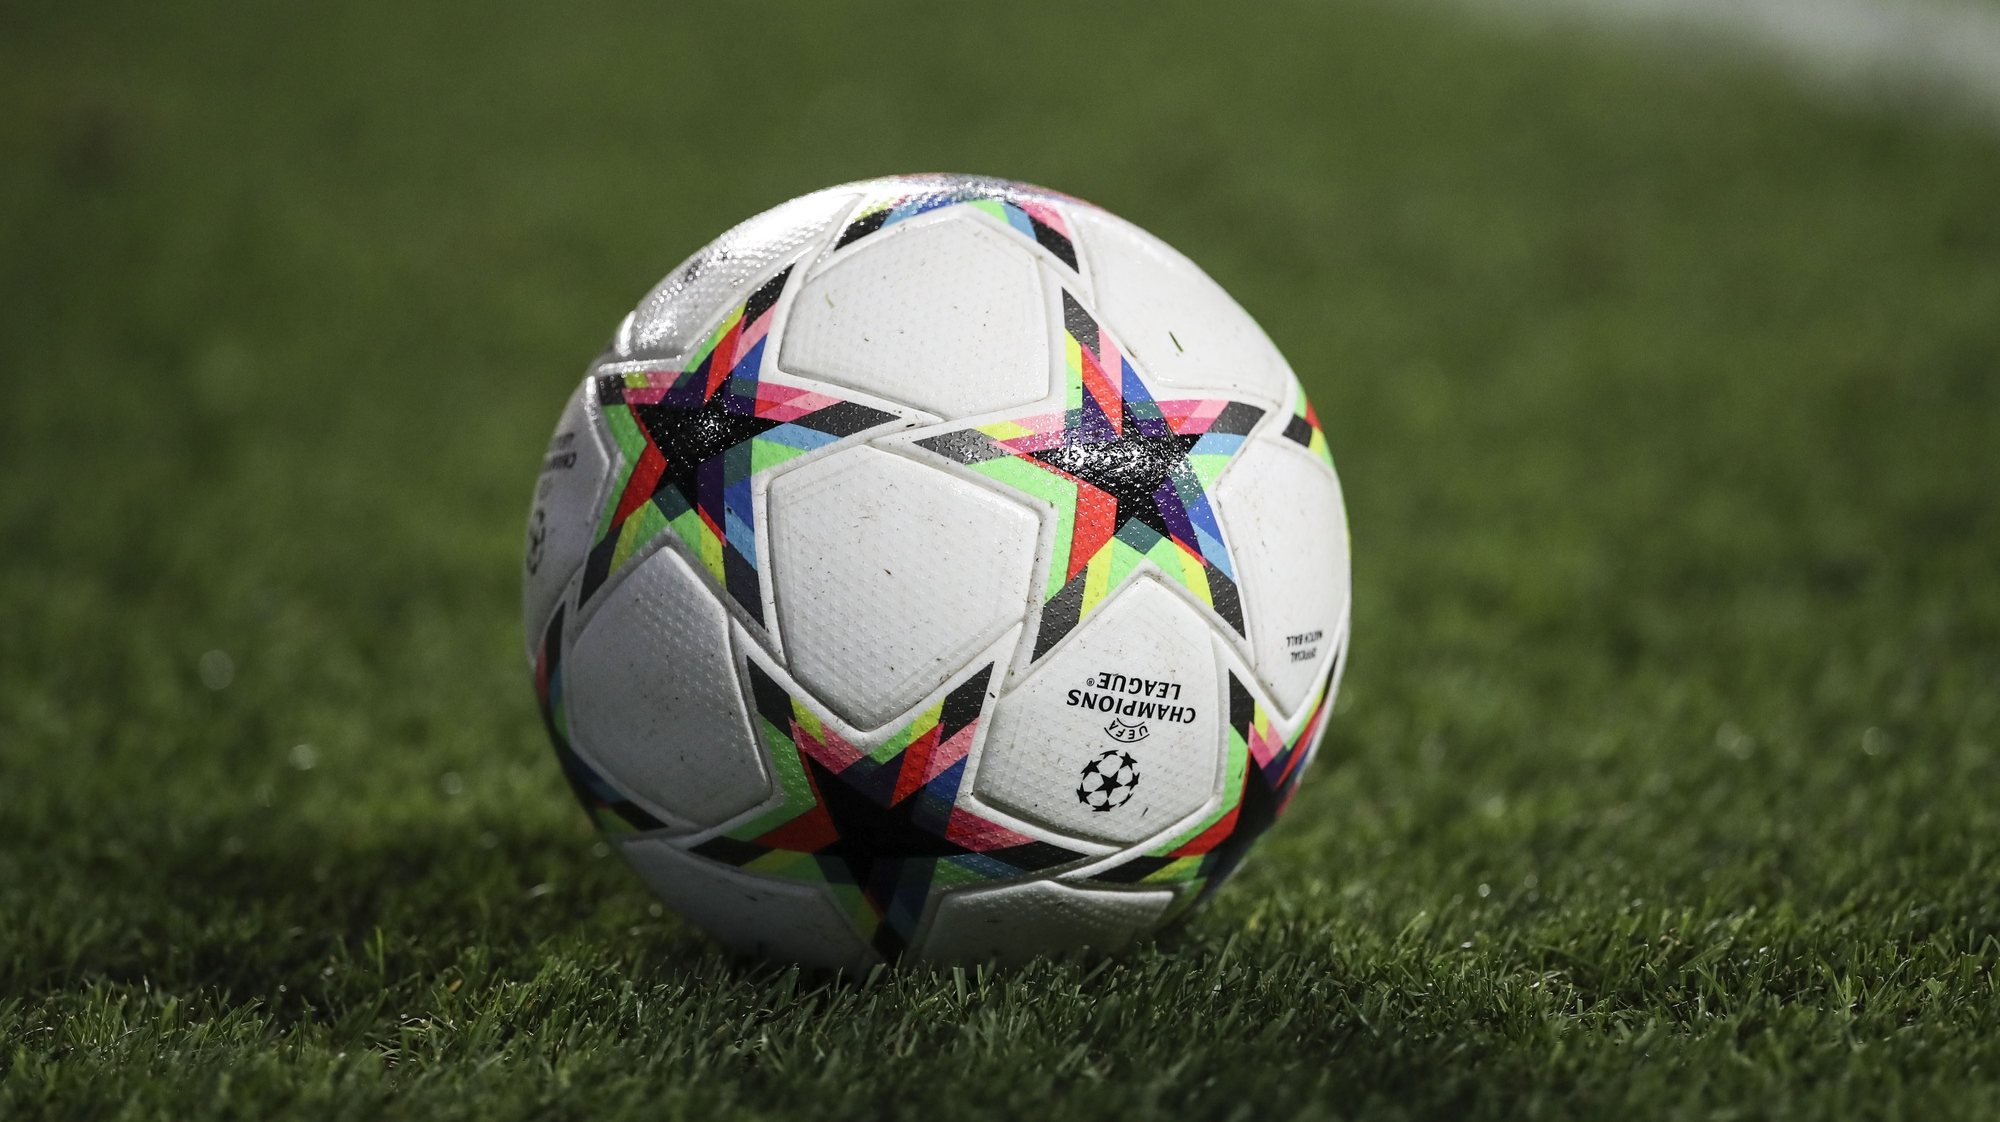 Bola de futebol  utilizada nos jogos da Liga dos Campeões  durante a  época de 2022/2023, 06 de setembro de 2022. ANTONIO COTRIM/LUSA